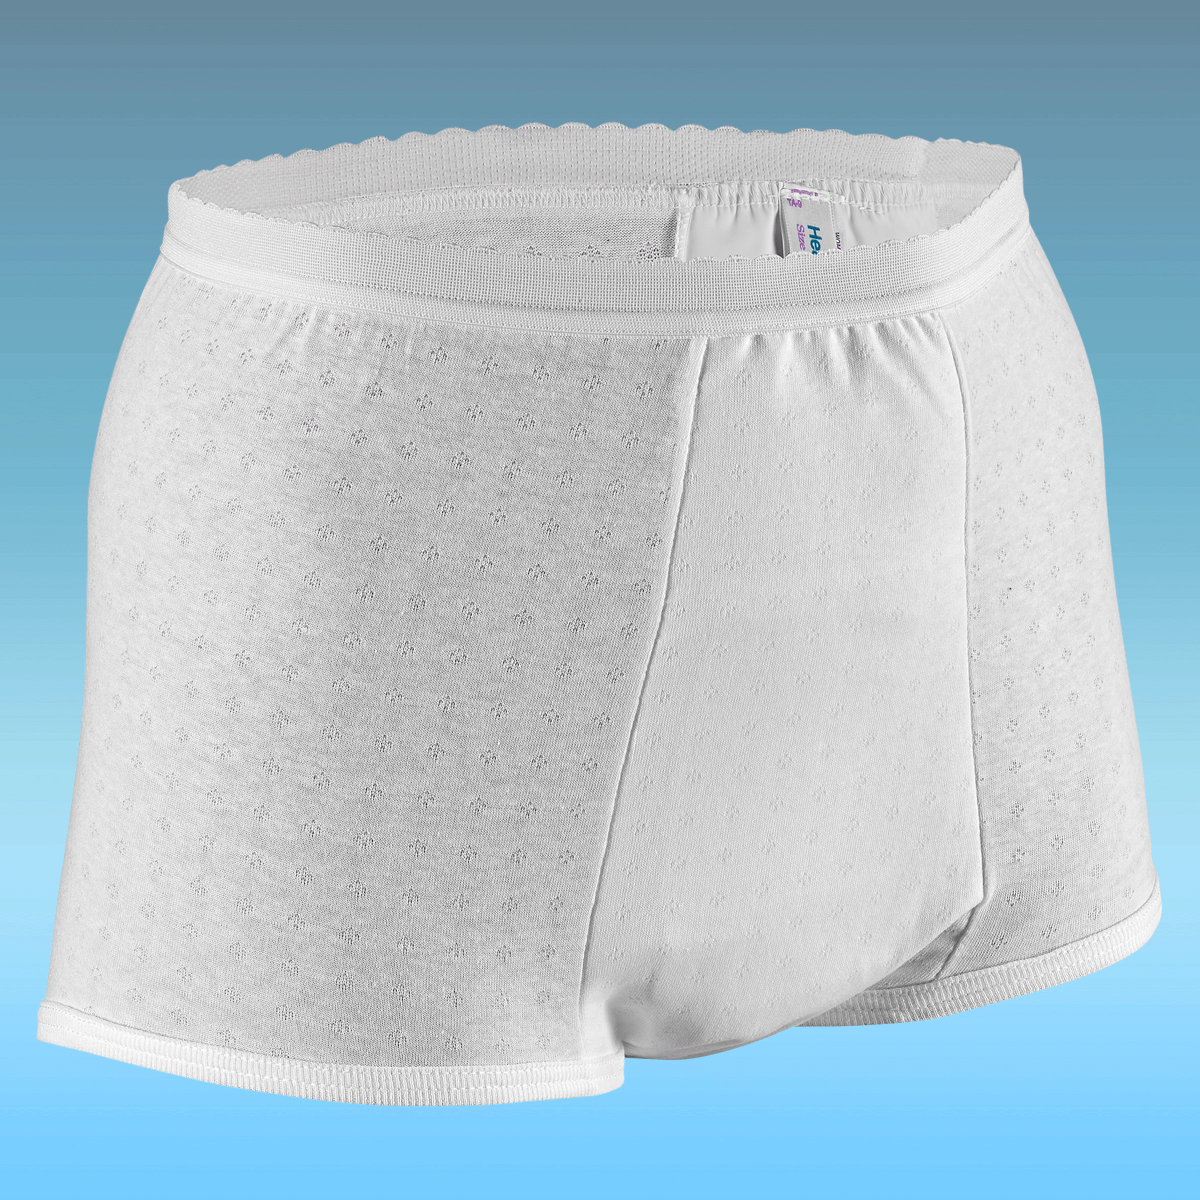 Health Dri Fancies Heavy Nylon Panty Size 10, White 34 - 36 (1 Each)